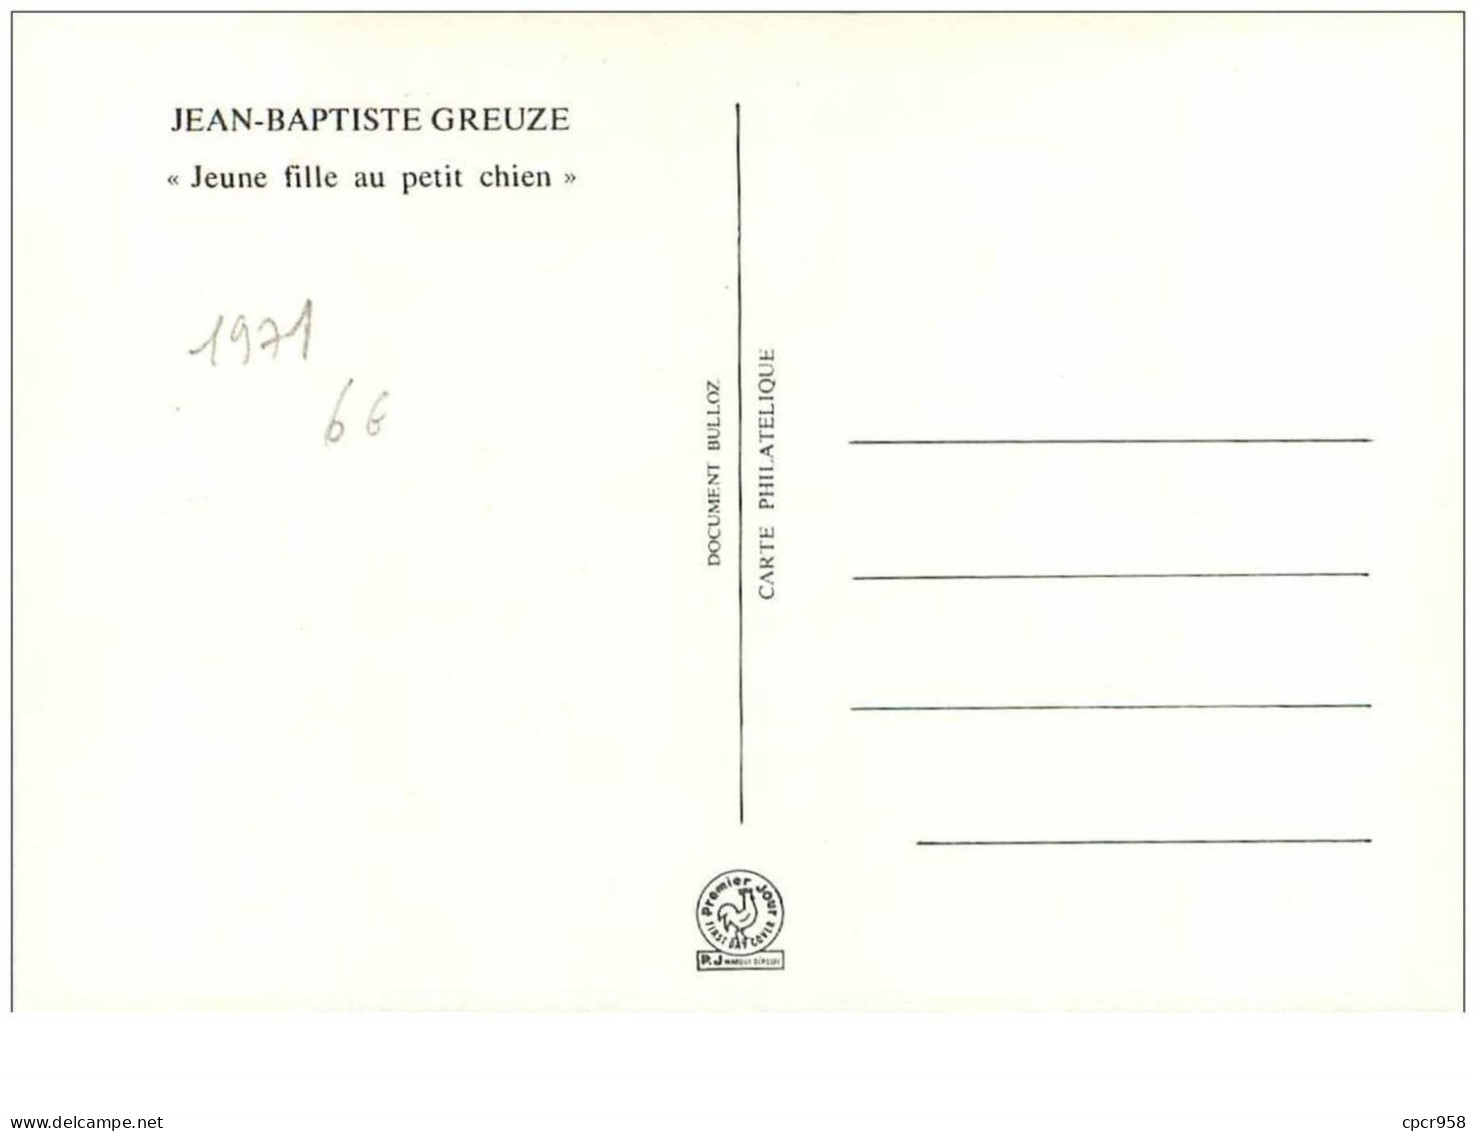 CROIX-ROUGE.n°28543.JEAN BAPTISTE GREUZE."JEUNE FILLE AU PETIT CHIEN".1971.CARTE MAXIMUM. - Red Cross